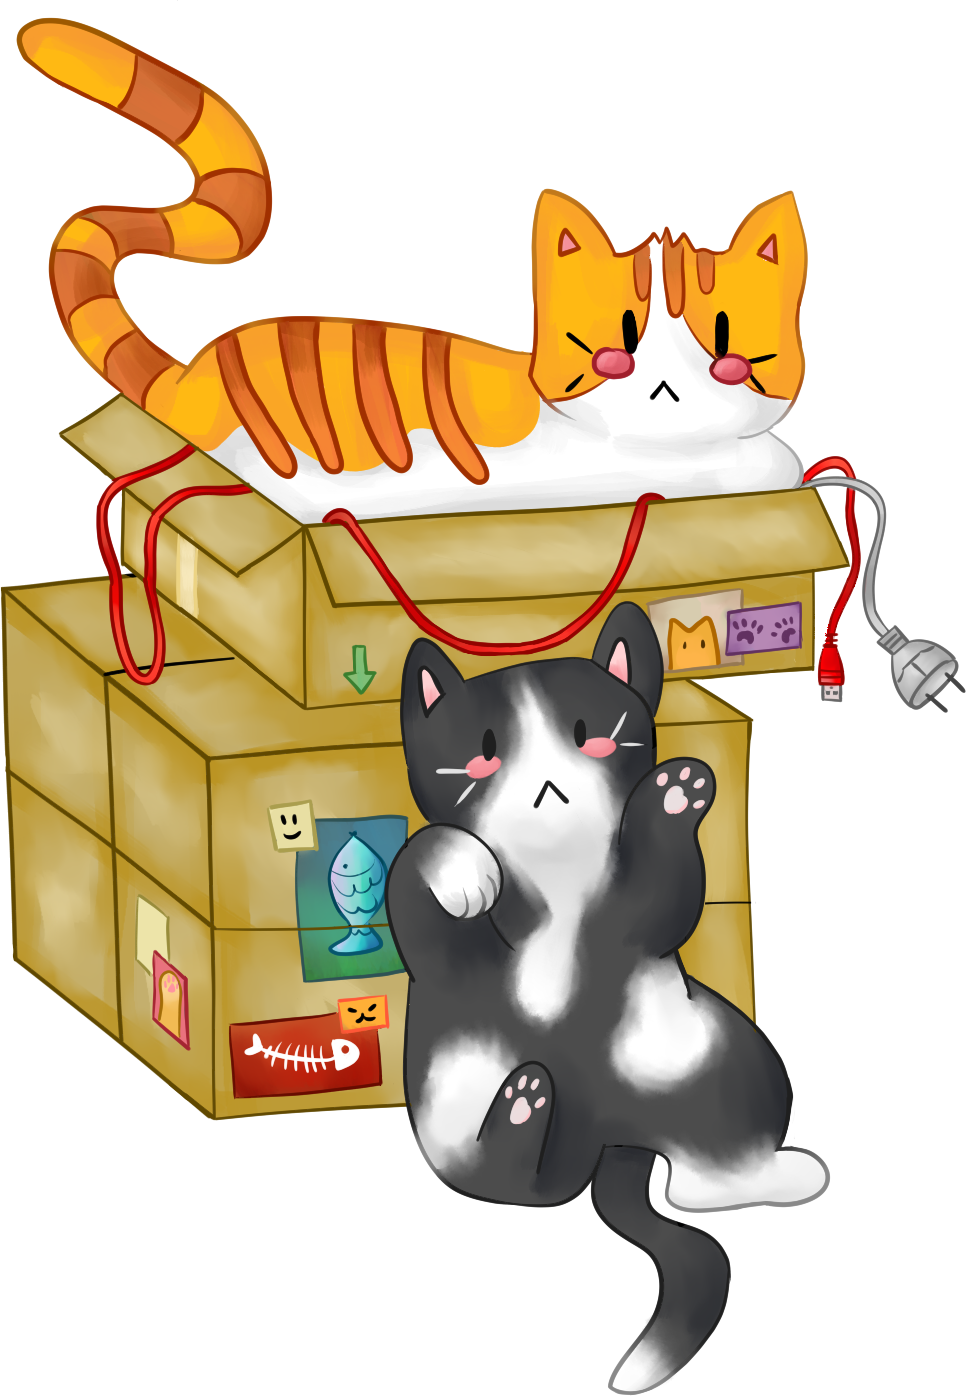 Un chat roux dans un carton de câbles et un autre chat contre les cartons, avec des affiches de chats et de poissons sur les cartons. CC-BY Brume